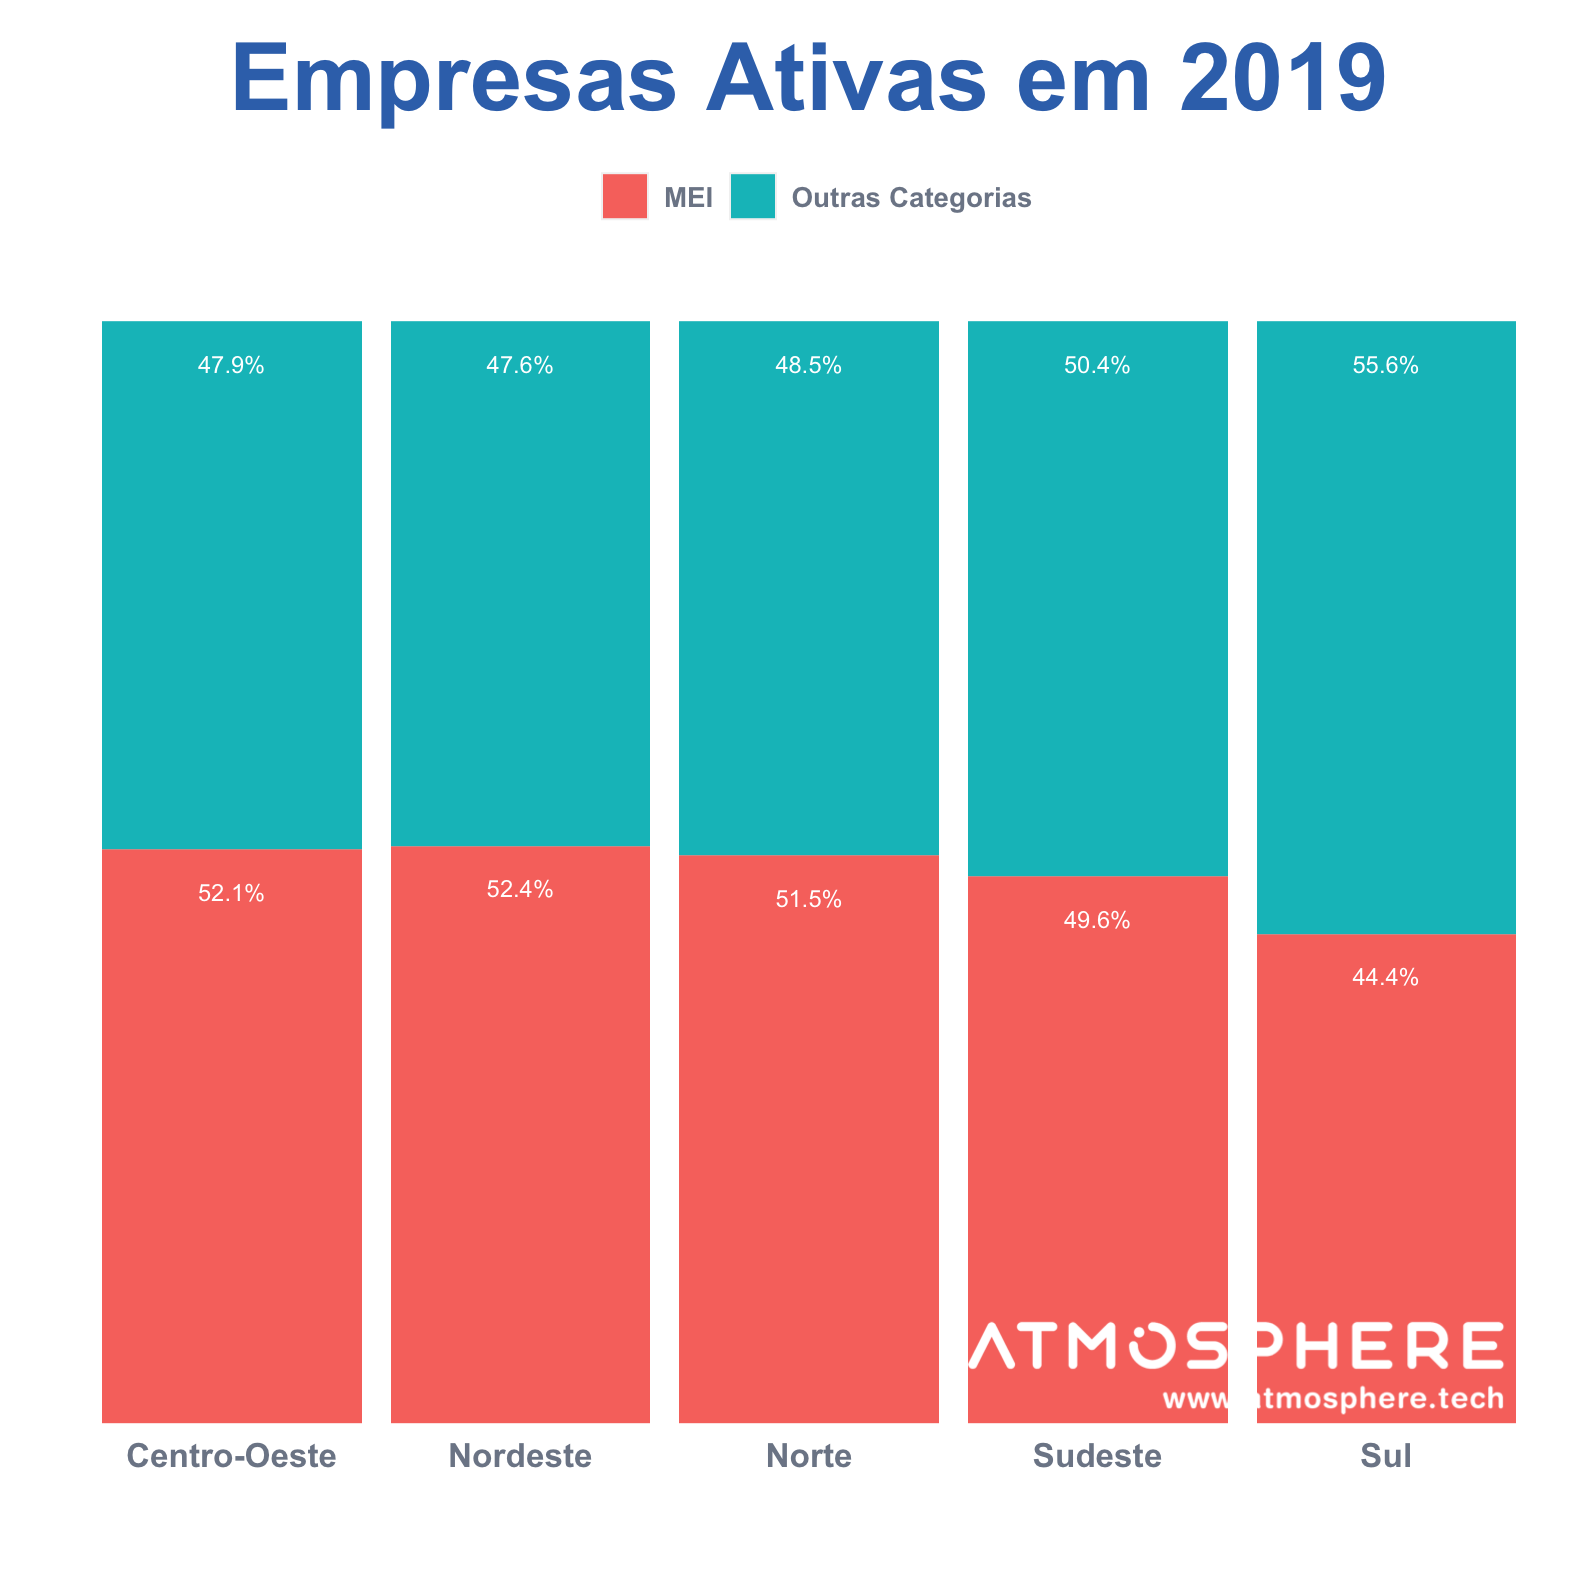 Atmosphere Gráfico de MEI Ativos por região em 2019